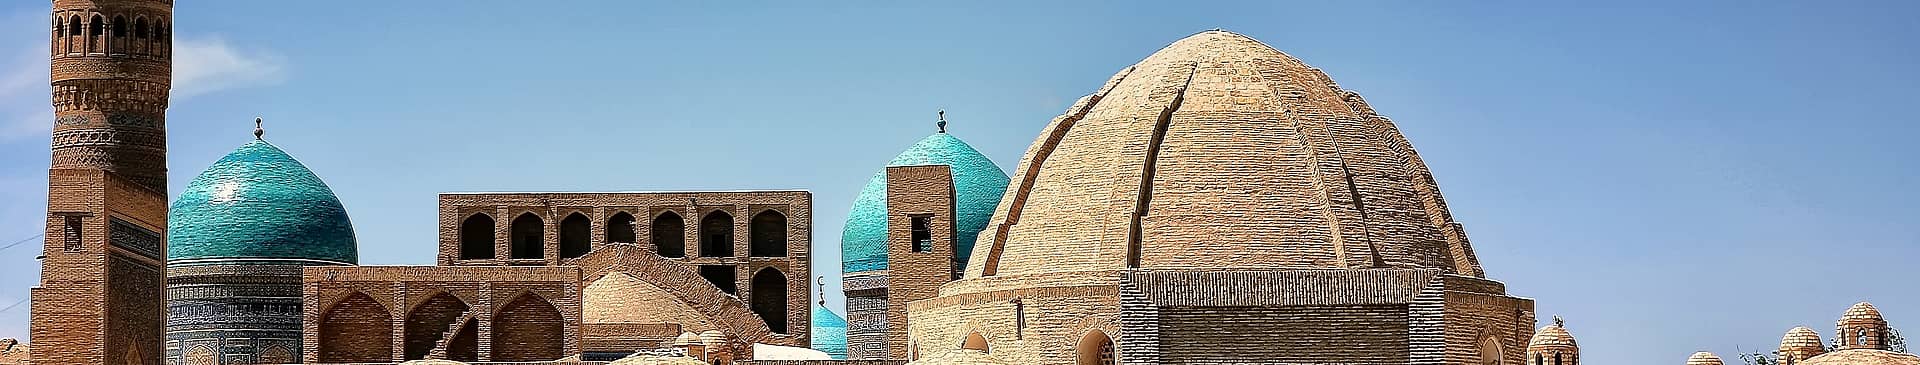 Uzbekistan in December